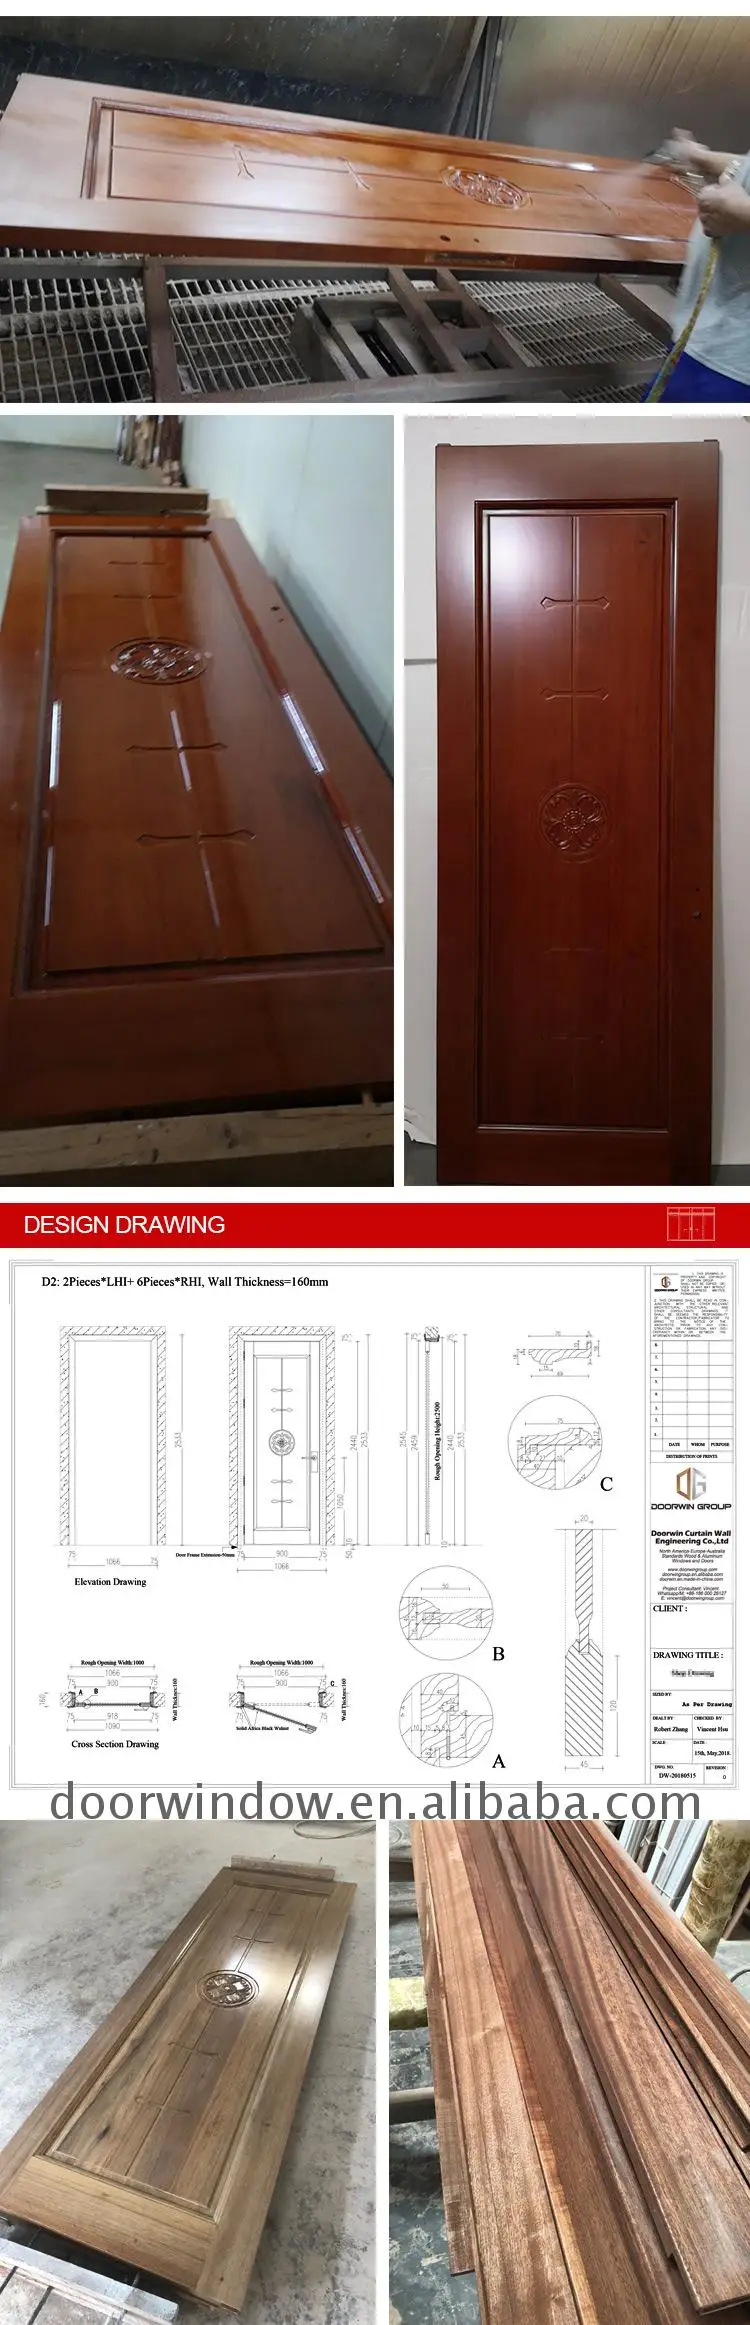 Inward swing storm door inward swing casement door with low price high quality inges swing casement door